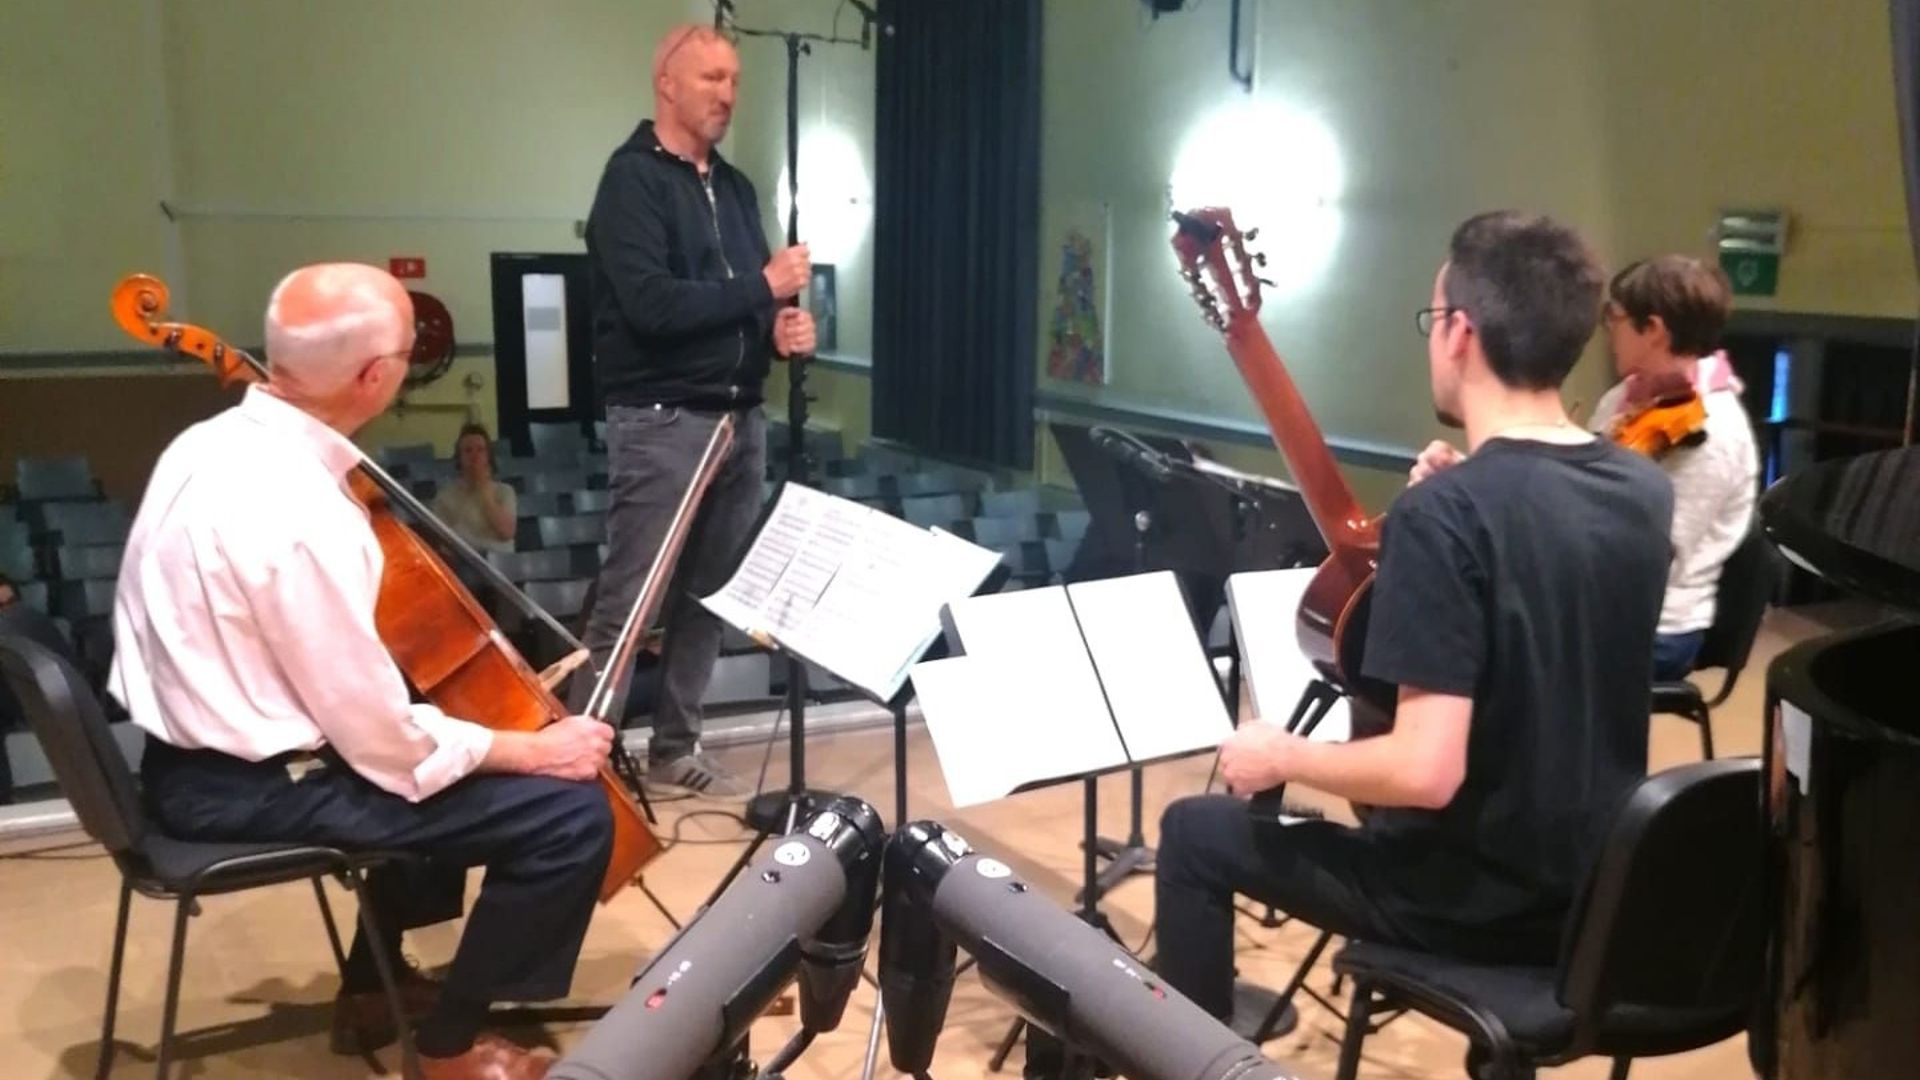 Notre ingénieur du son (au centre), Bertrand Vanvarembergh, en pleine balance avec un trio d'élèves du Conservatoire de Verviers. De gauche à droite : Hugo Ravesloot, violoncelle; Tristan Caelen, guitare et Anne Leyder, violon.